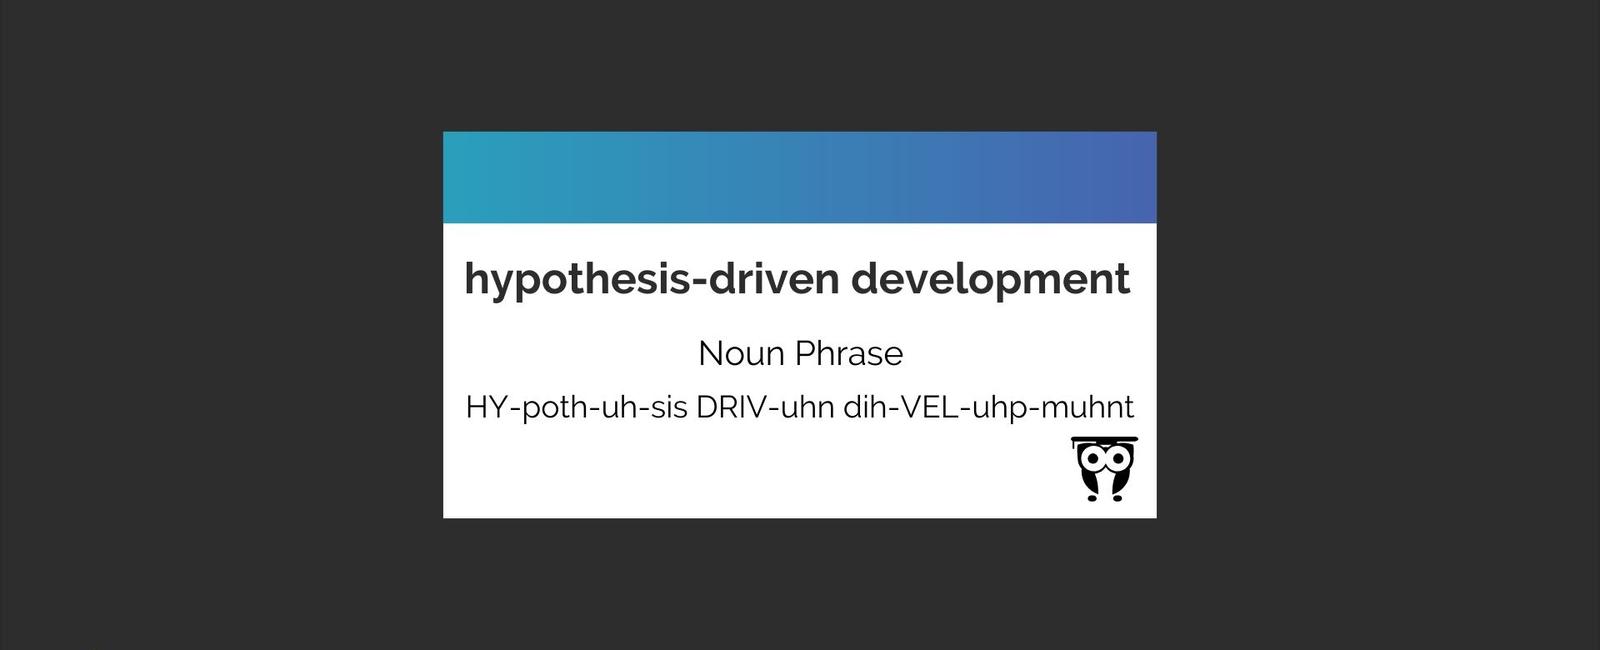 Hypothesis-driven Development